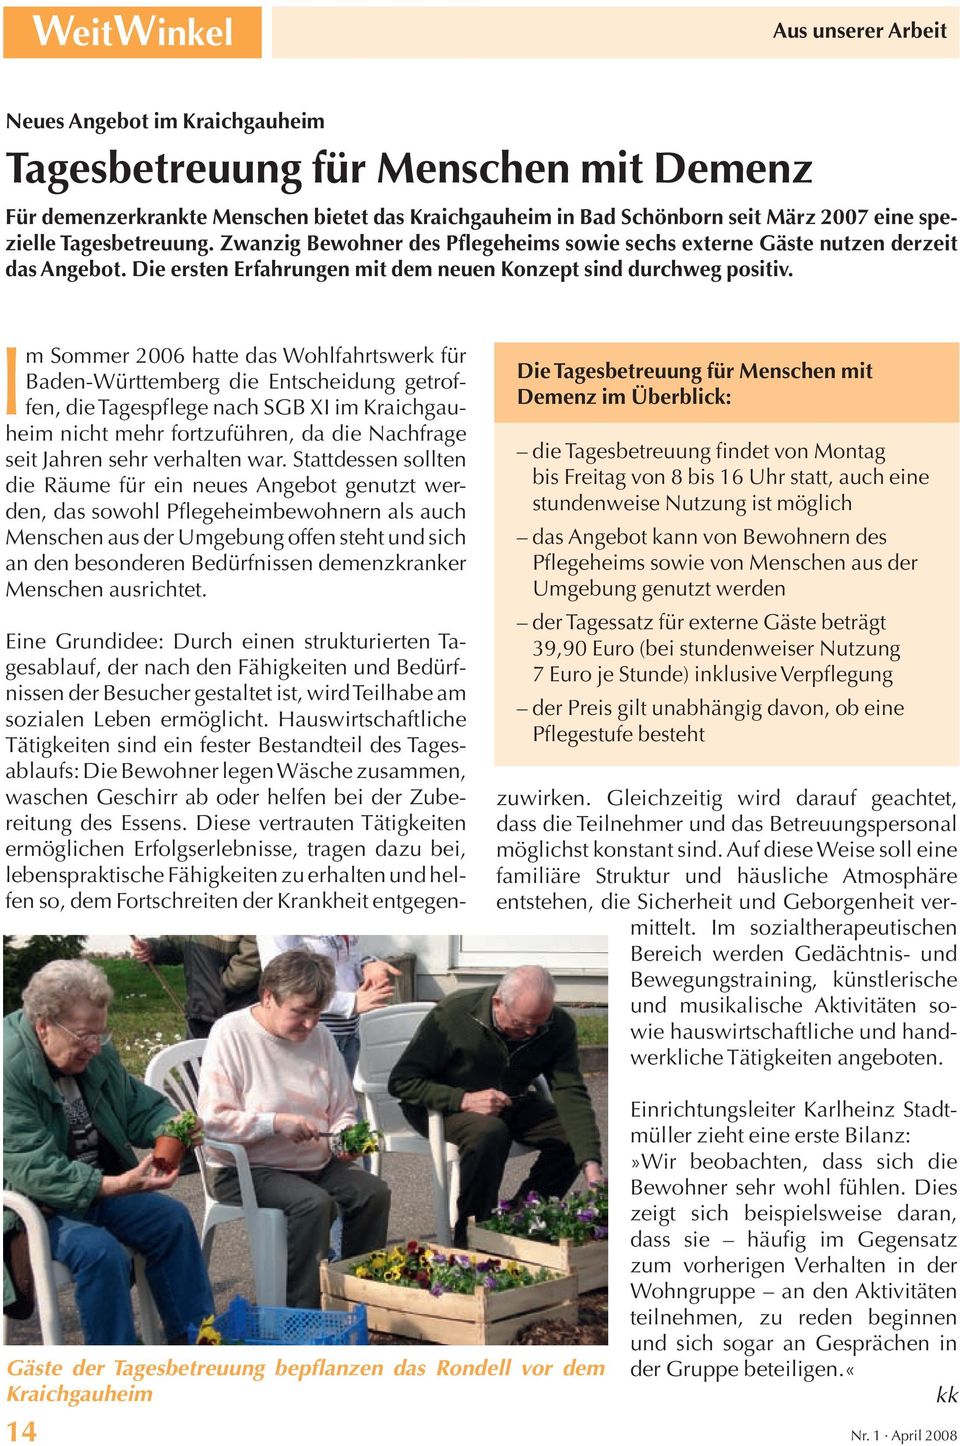 Im Sommer 2006 hatte das Wohlfahrtswerk für Baden-Württemberg die Entscheidung getroffen, die Tagespflege nach SGB XI im Kraichgauheim nicht mehr fortzuführen, da die Nachfrage seit Jahren sehr